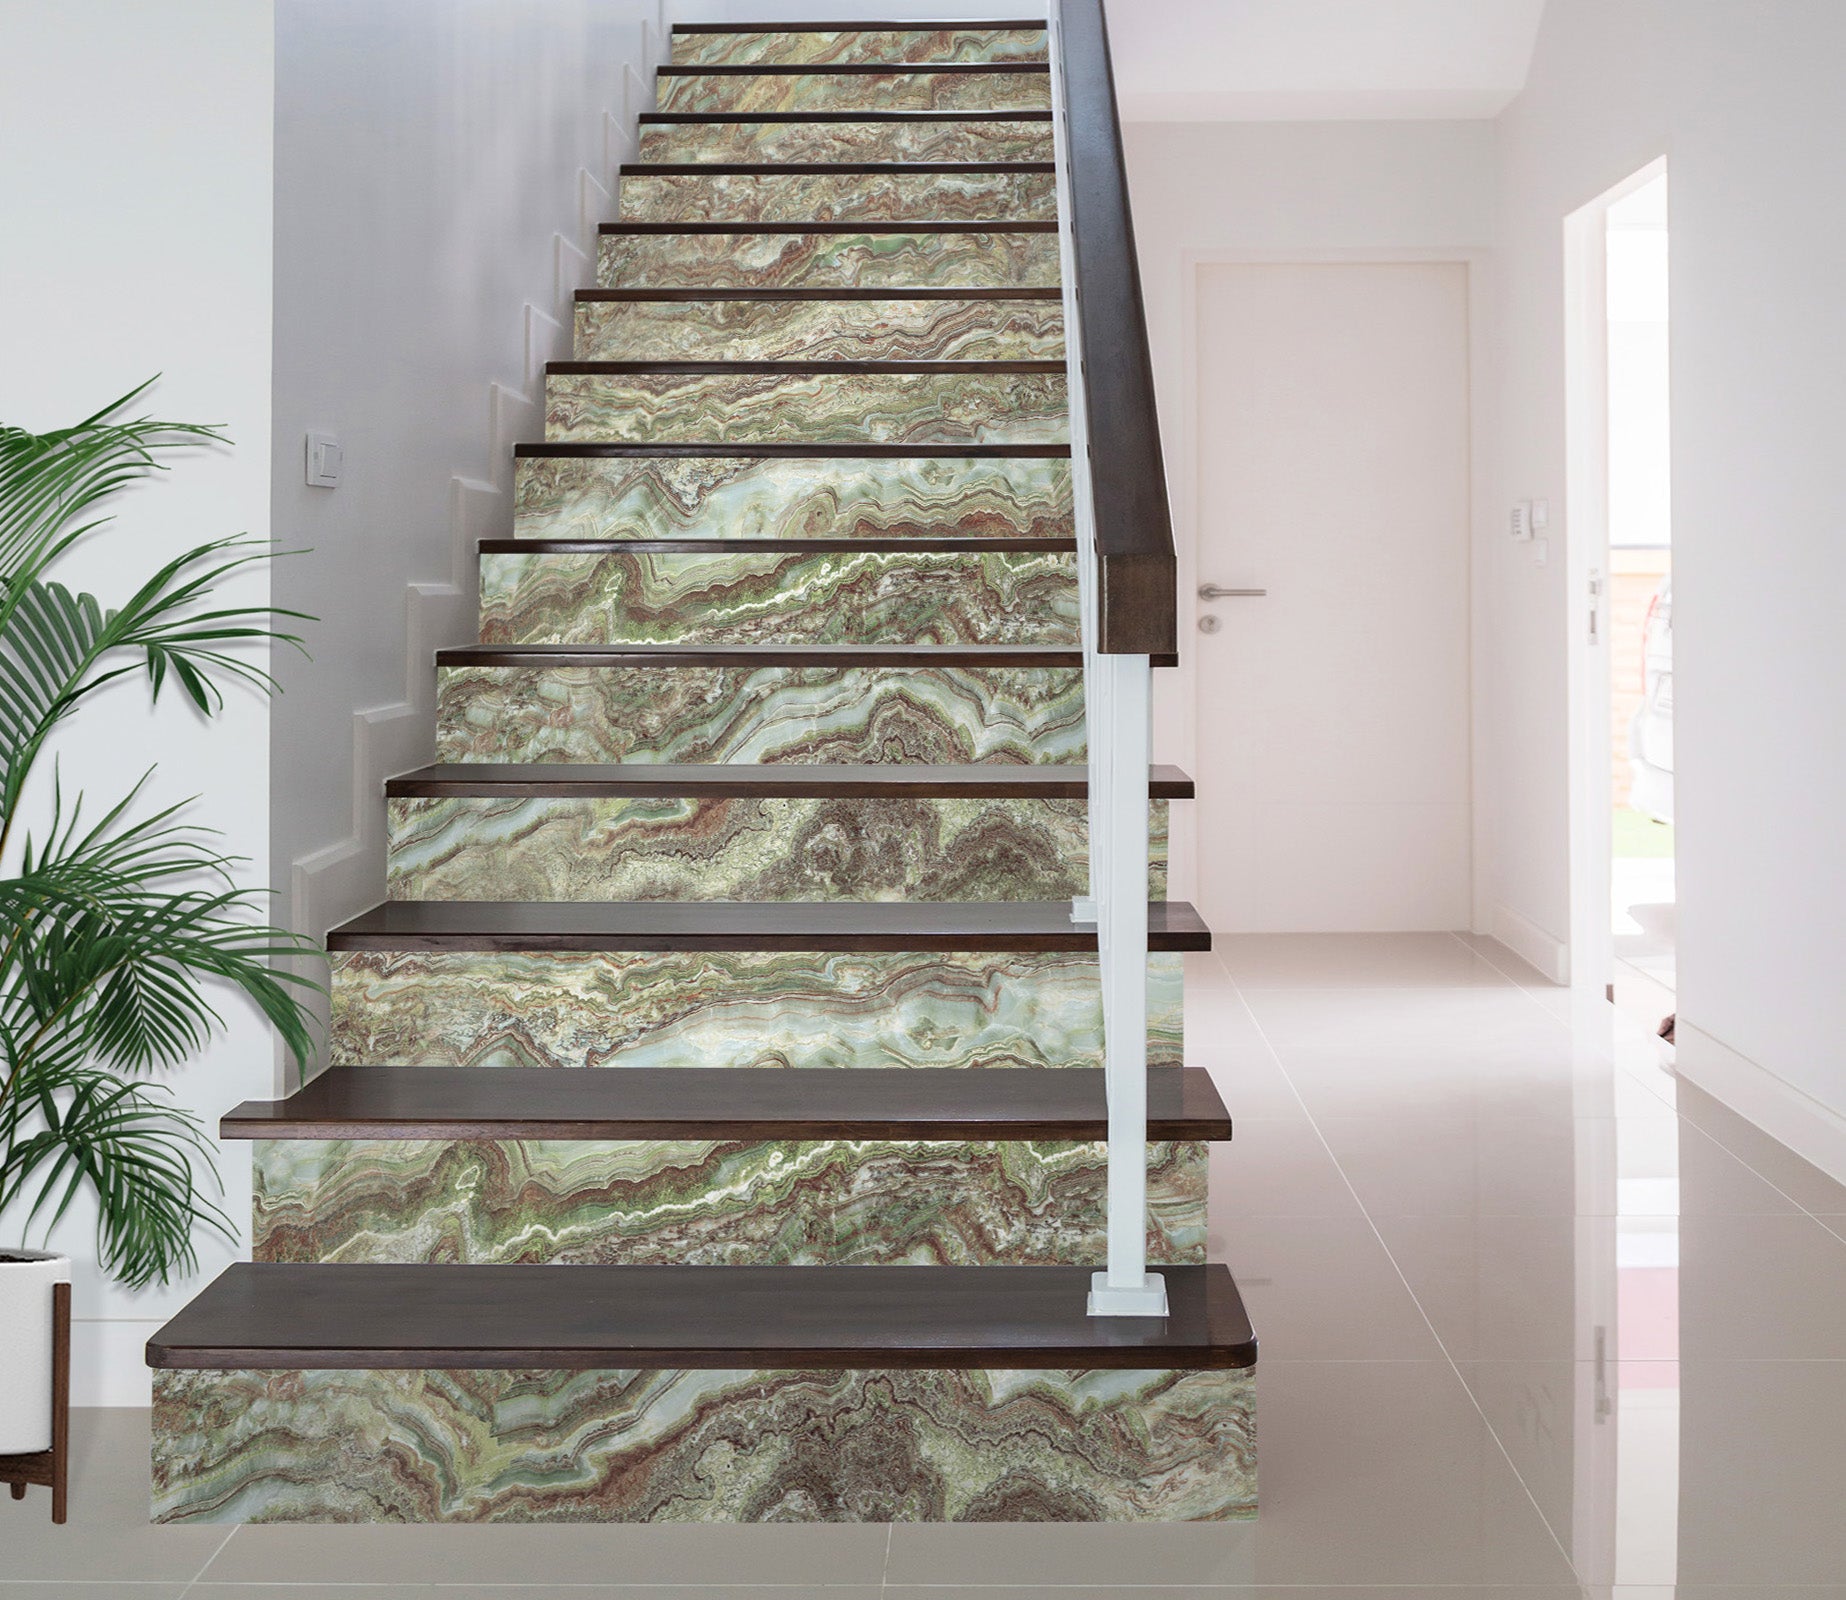 3D Green Irregular Horizontal 576 Stair Risers